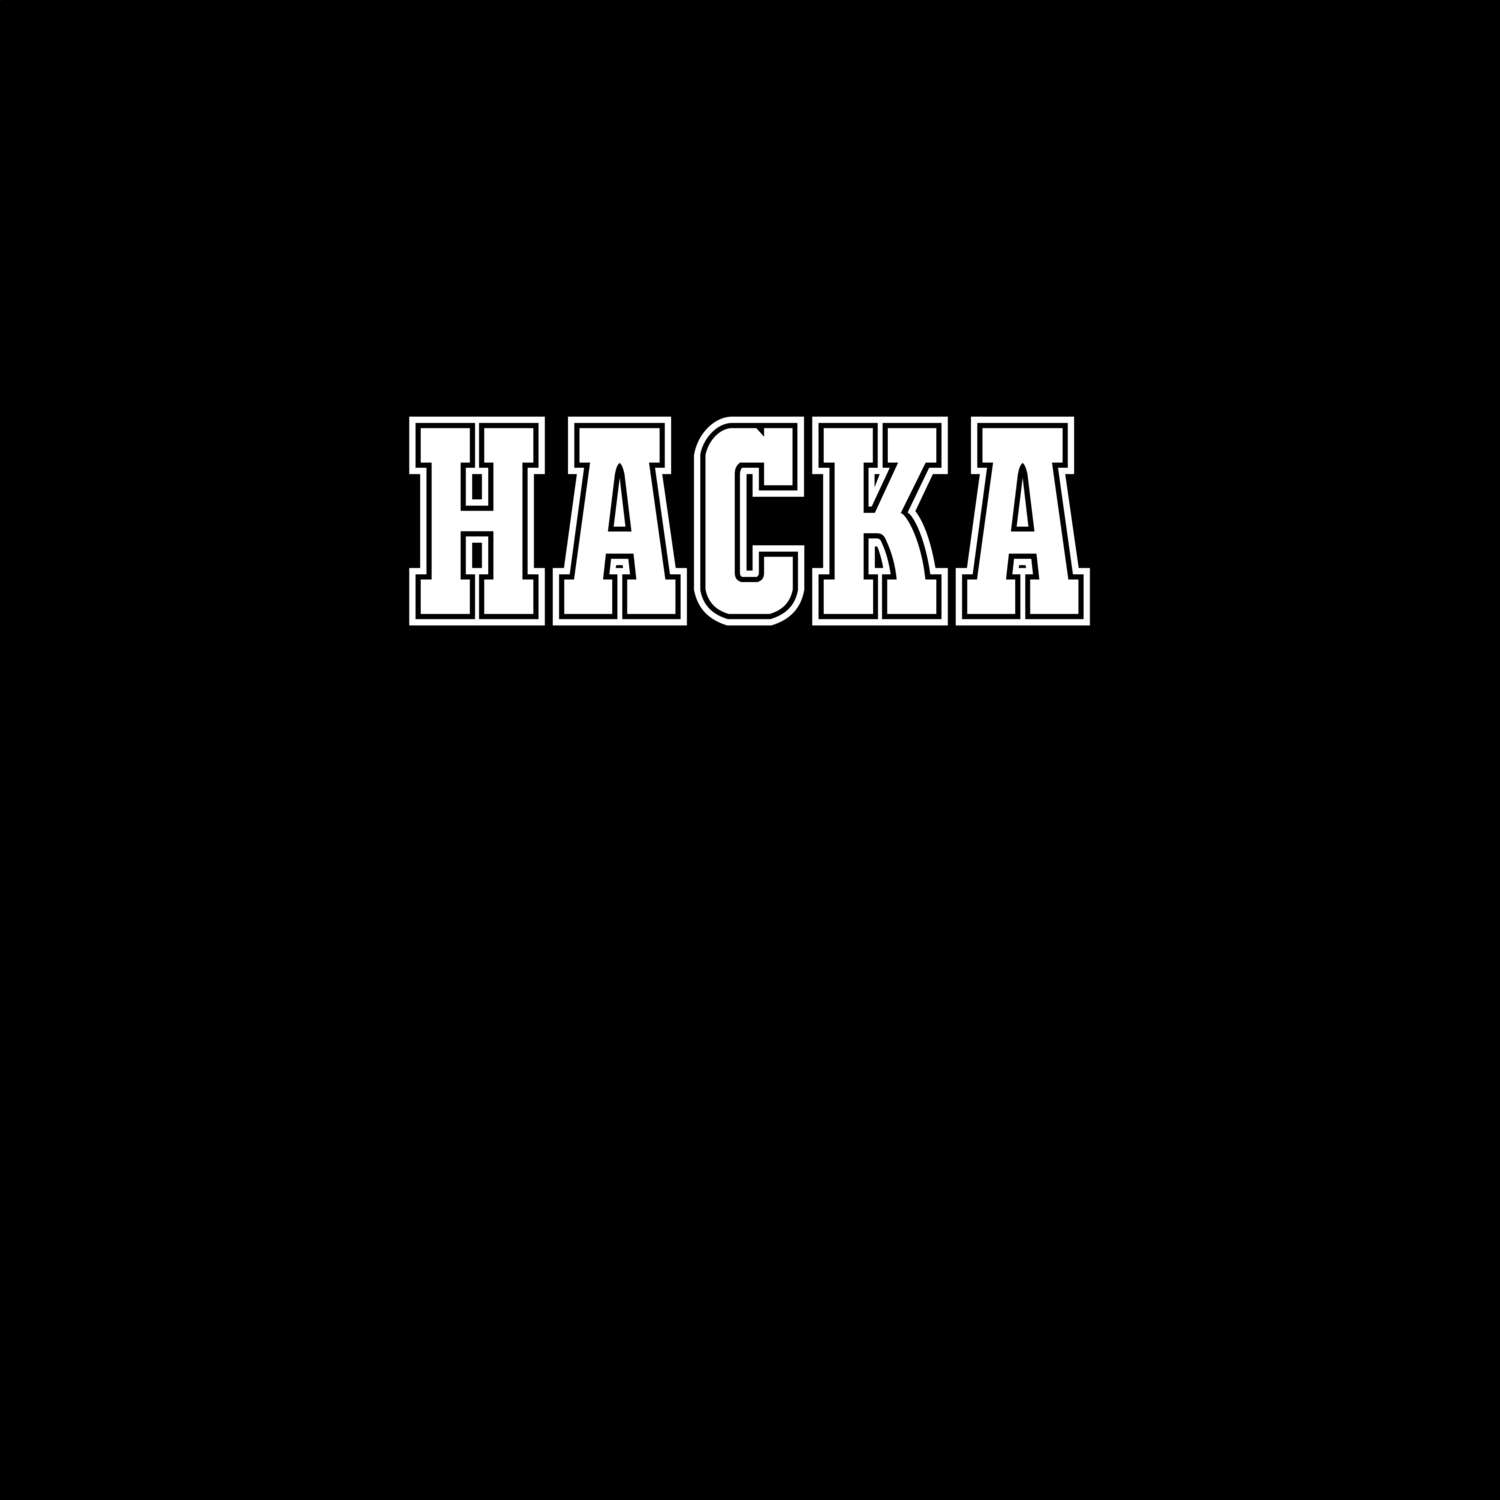 Hacka T-Shirt »Classic«